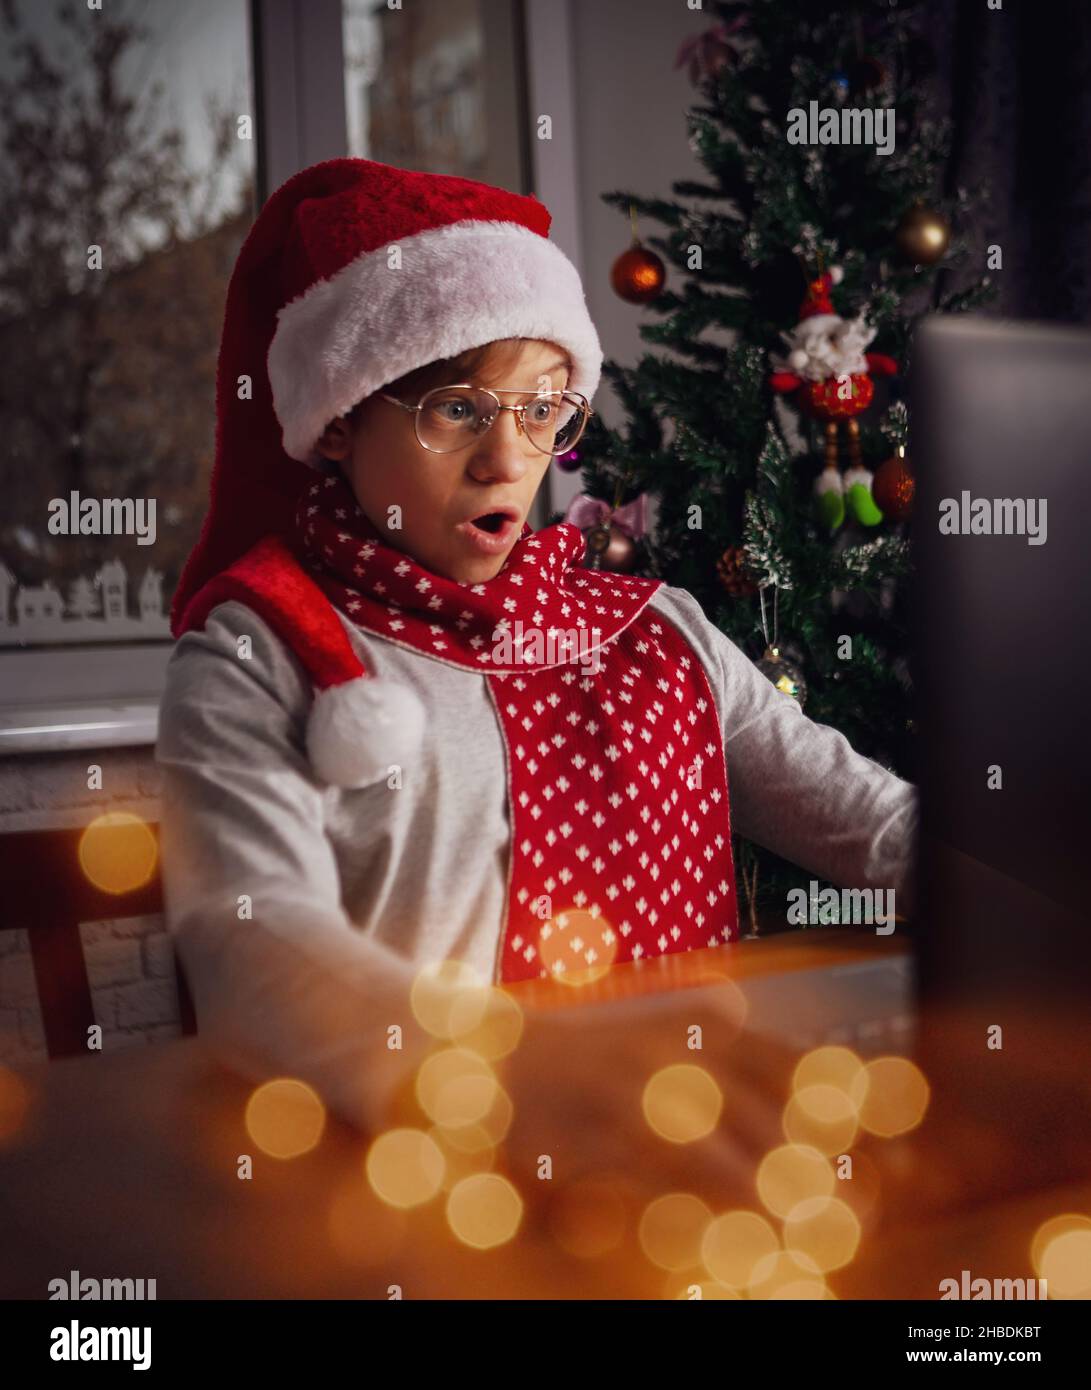 Divertido chico preguntándose sentado frente a la pantalla del portátil con gorra roja de Santa Claus teniendo una reunión de Navidad con familiares o amigos. Luces festivas. Foto de stock